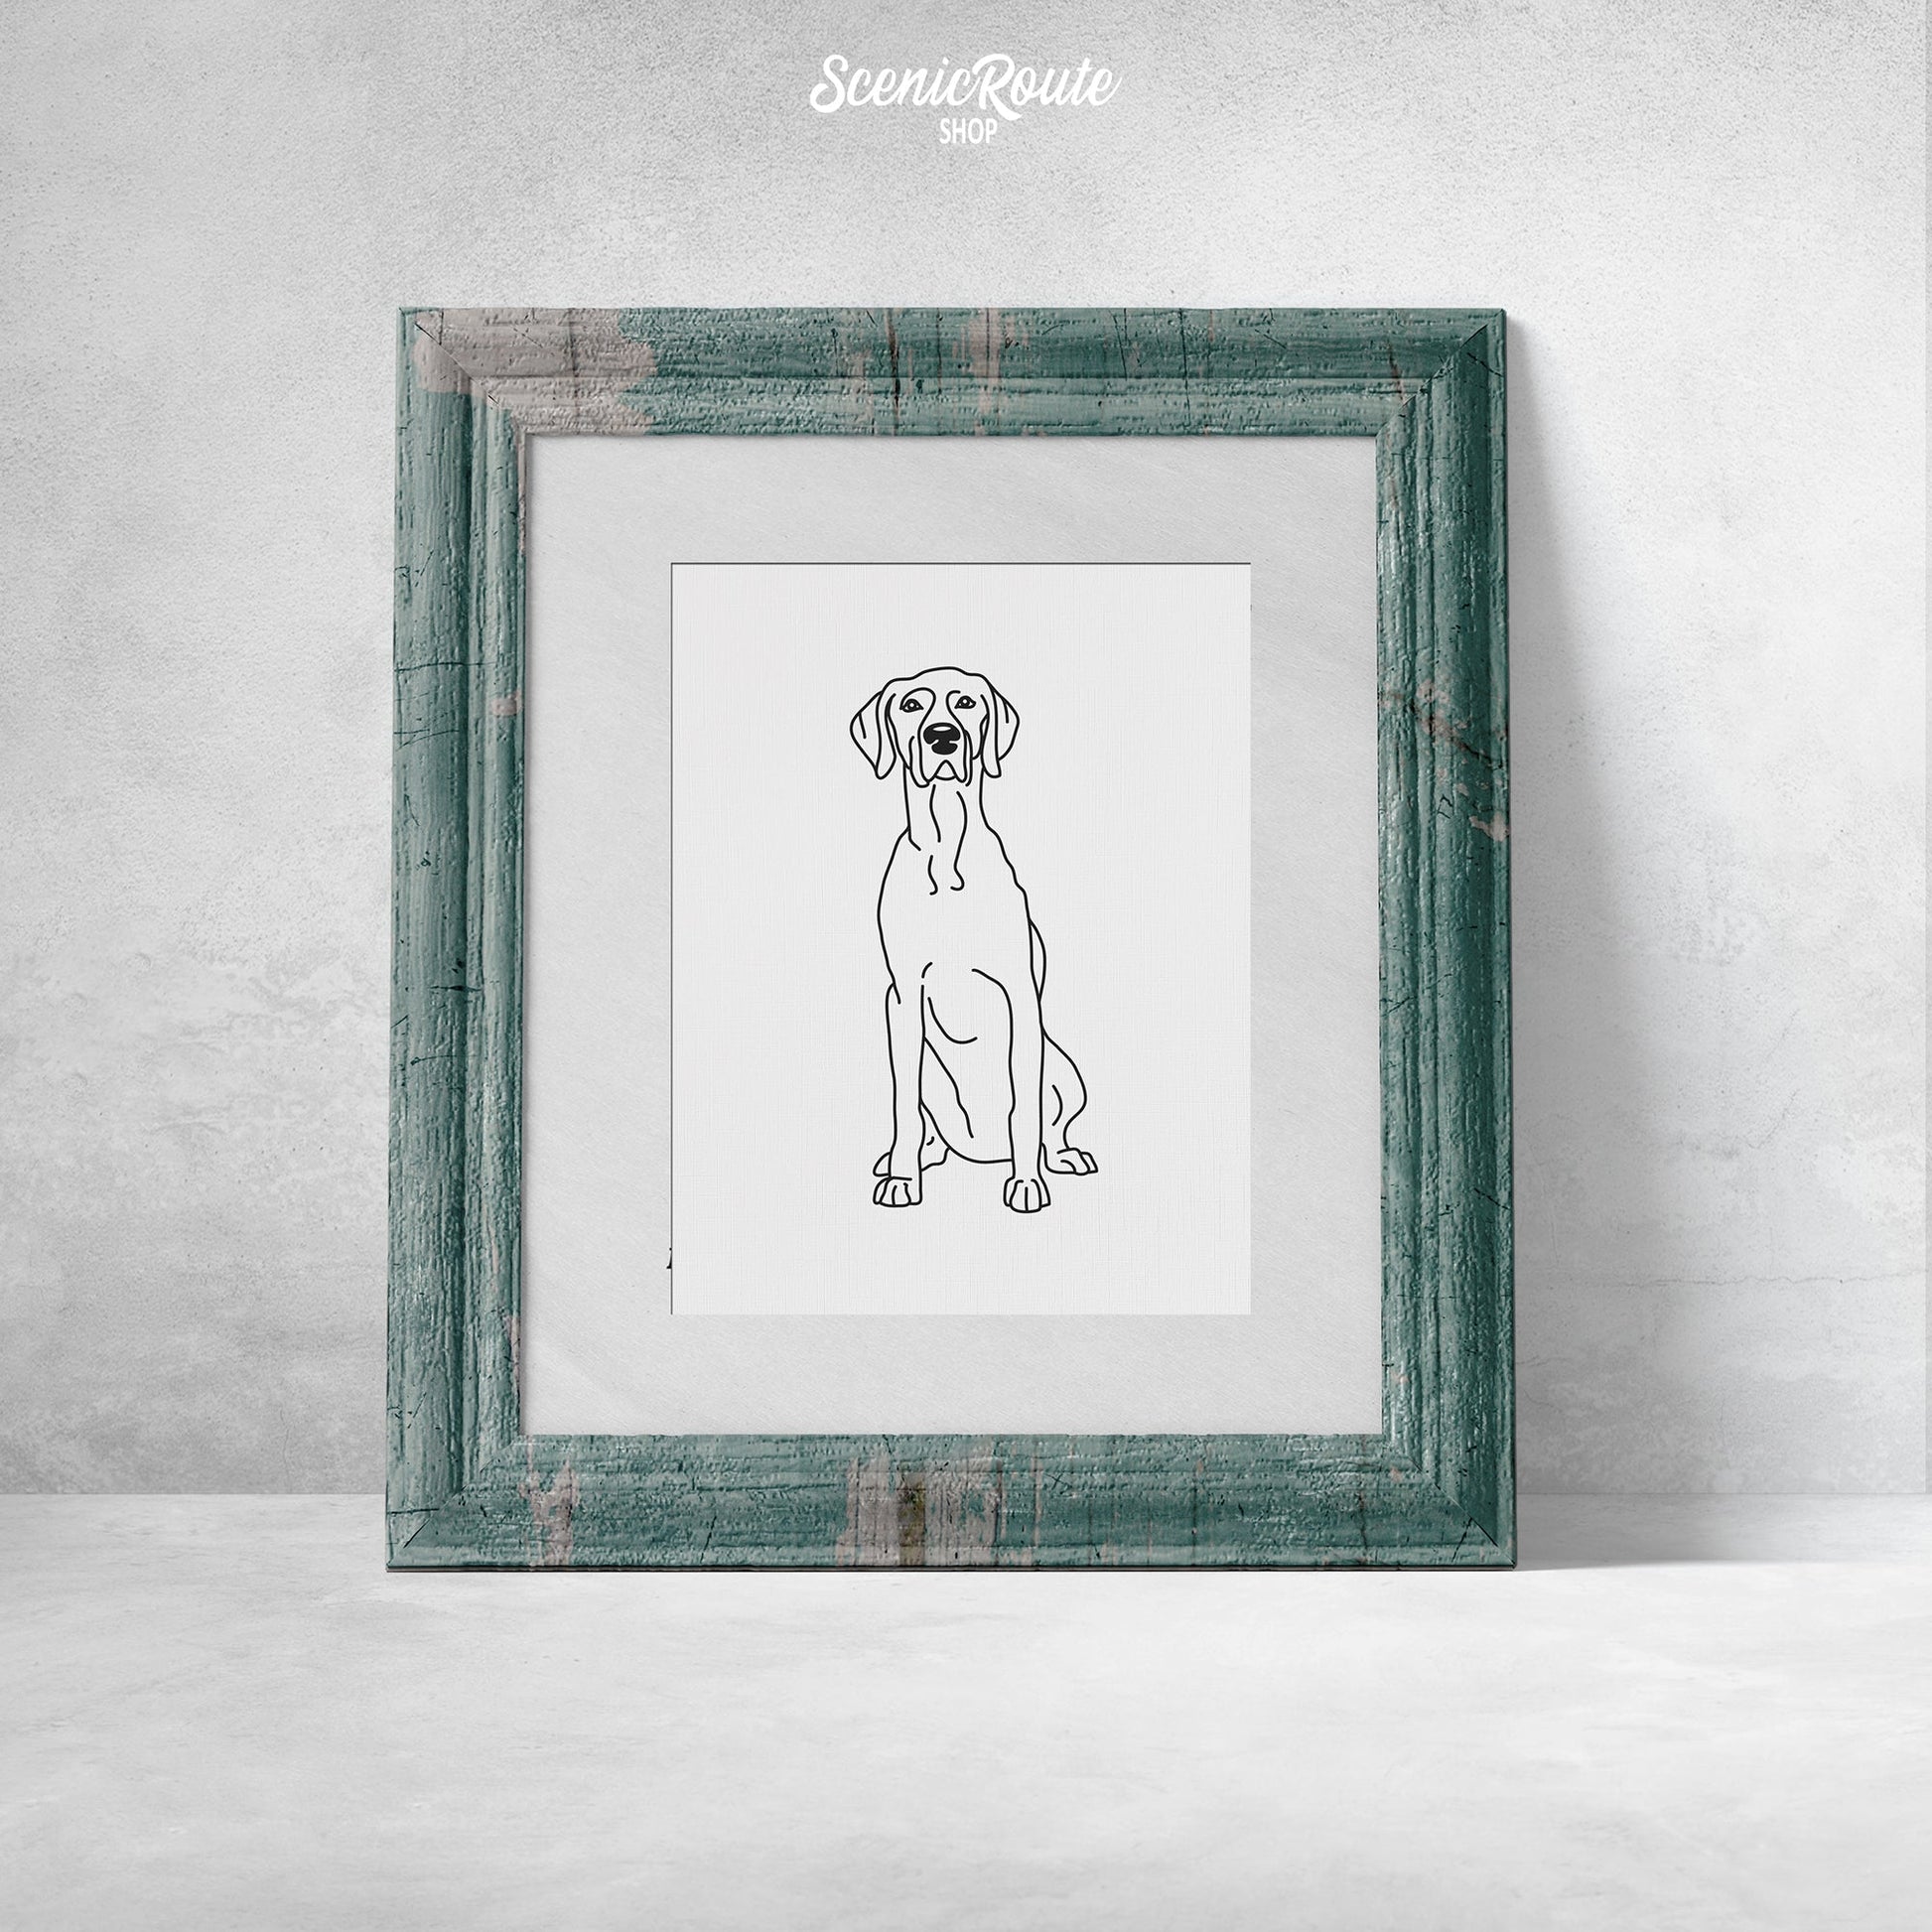 A framed line art drawing of a Weimaraner dog